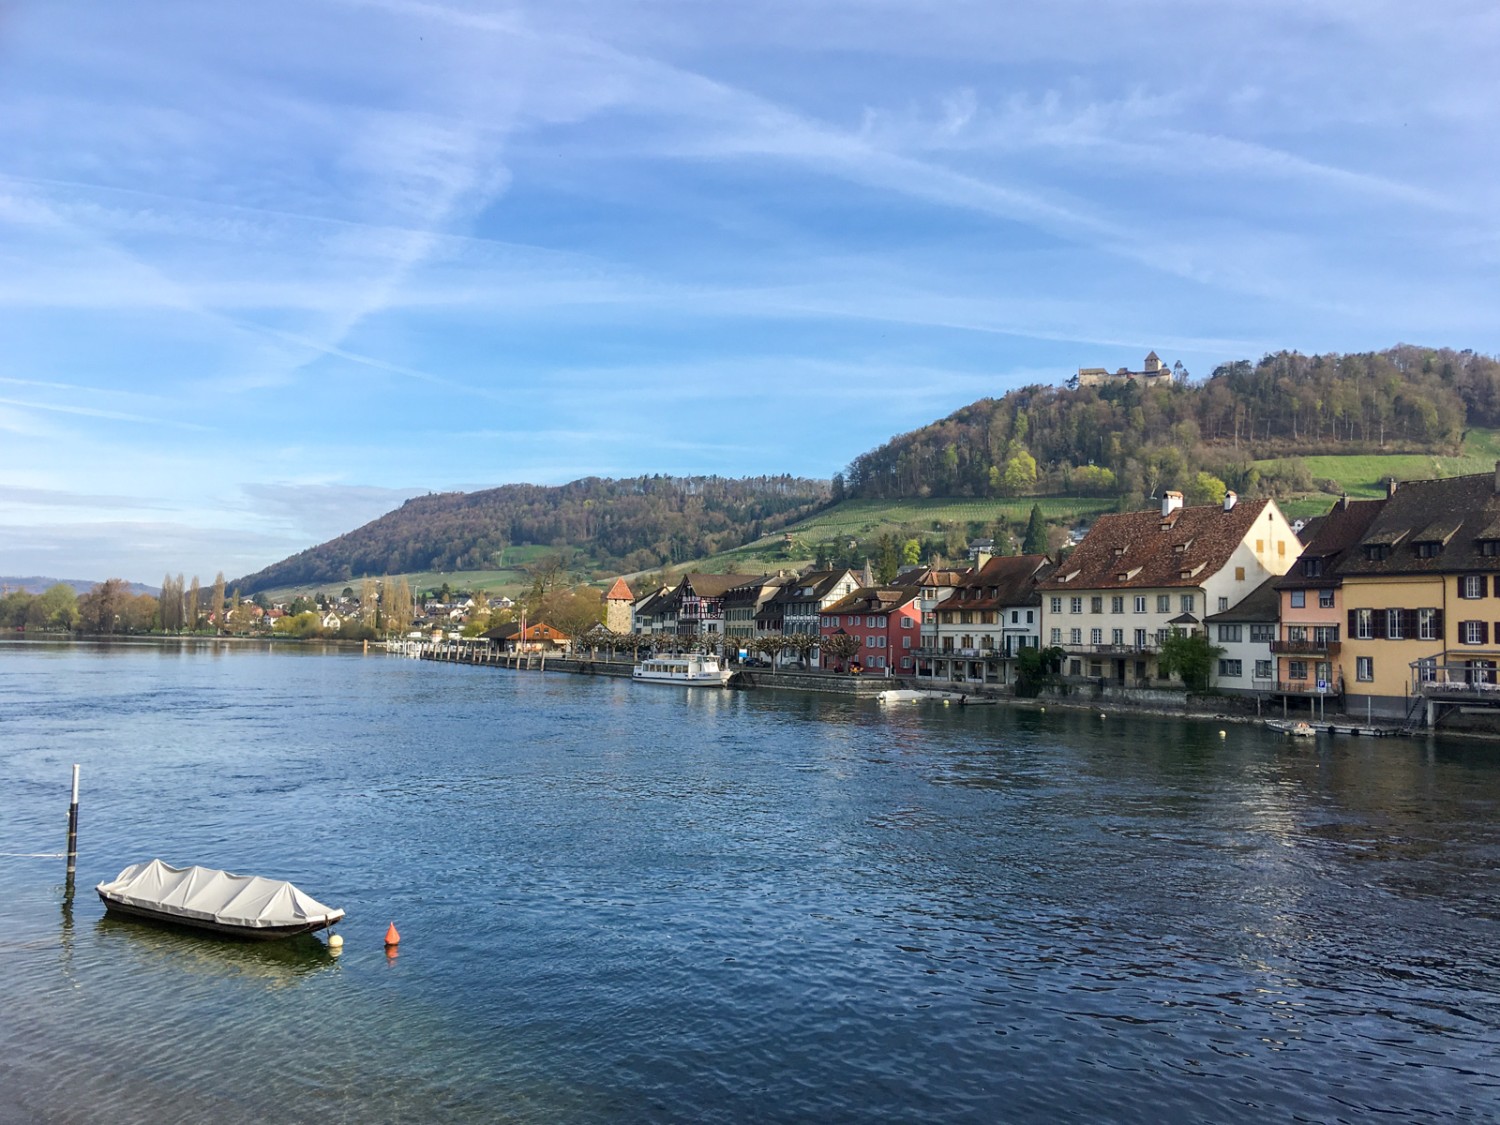 Der Rhein in Stein am Rhein lockt nach der Wanderung zum Sprung ins erfrischende Nass. Bild: Claudia Peter